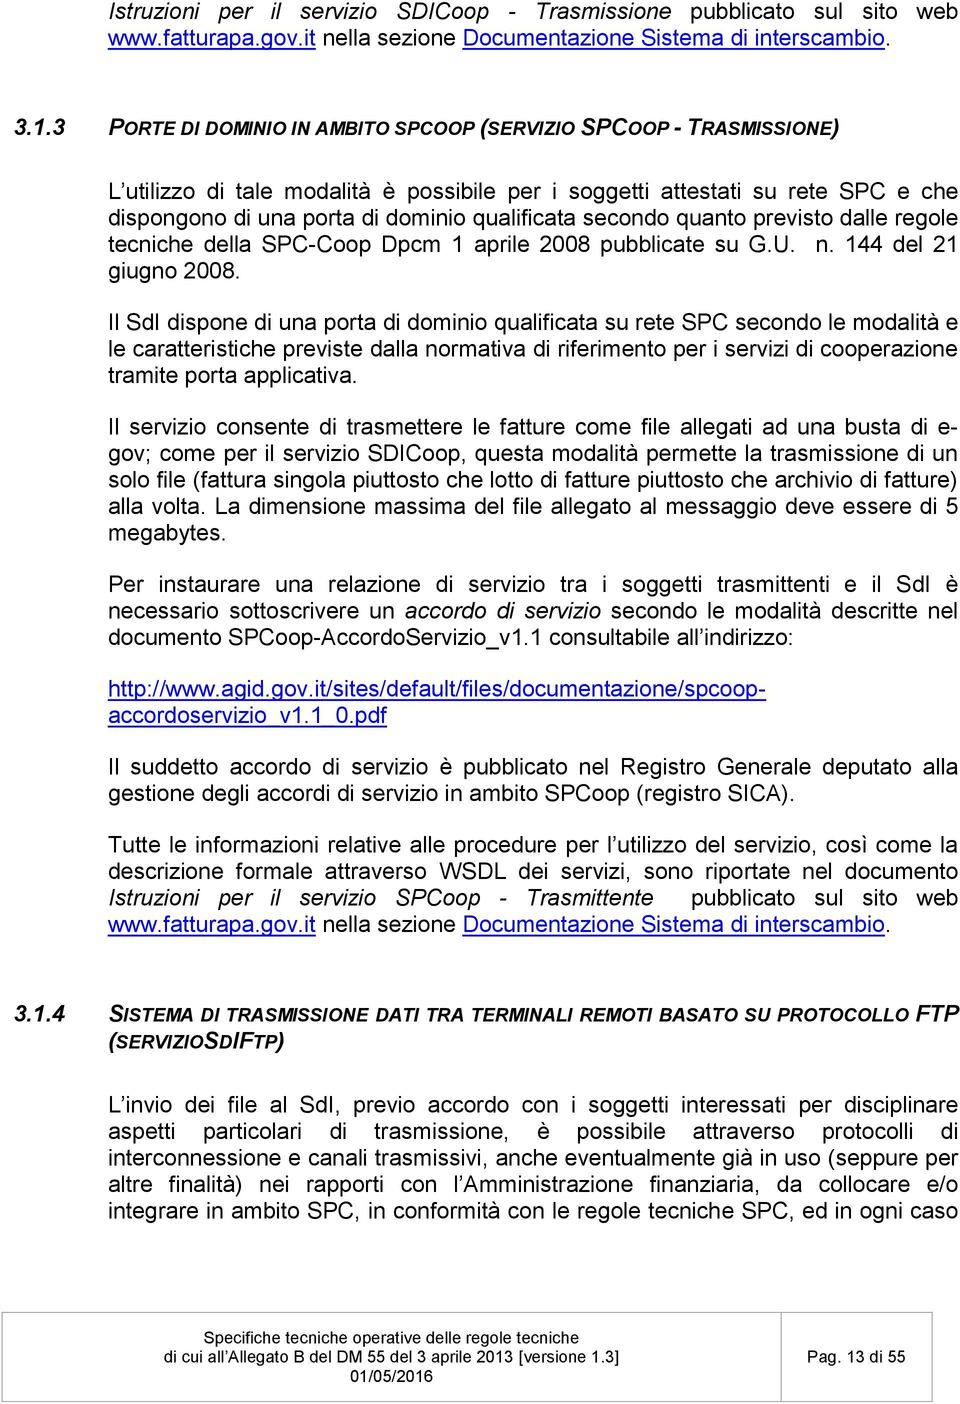 secondo quanto previsto dalle regole tecniche della SPC-Coop Dpcm 1 aprile 2008 pubblicate su G.U. n. 144 del 21 giugno 2008.